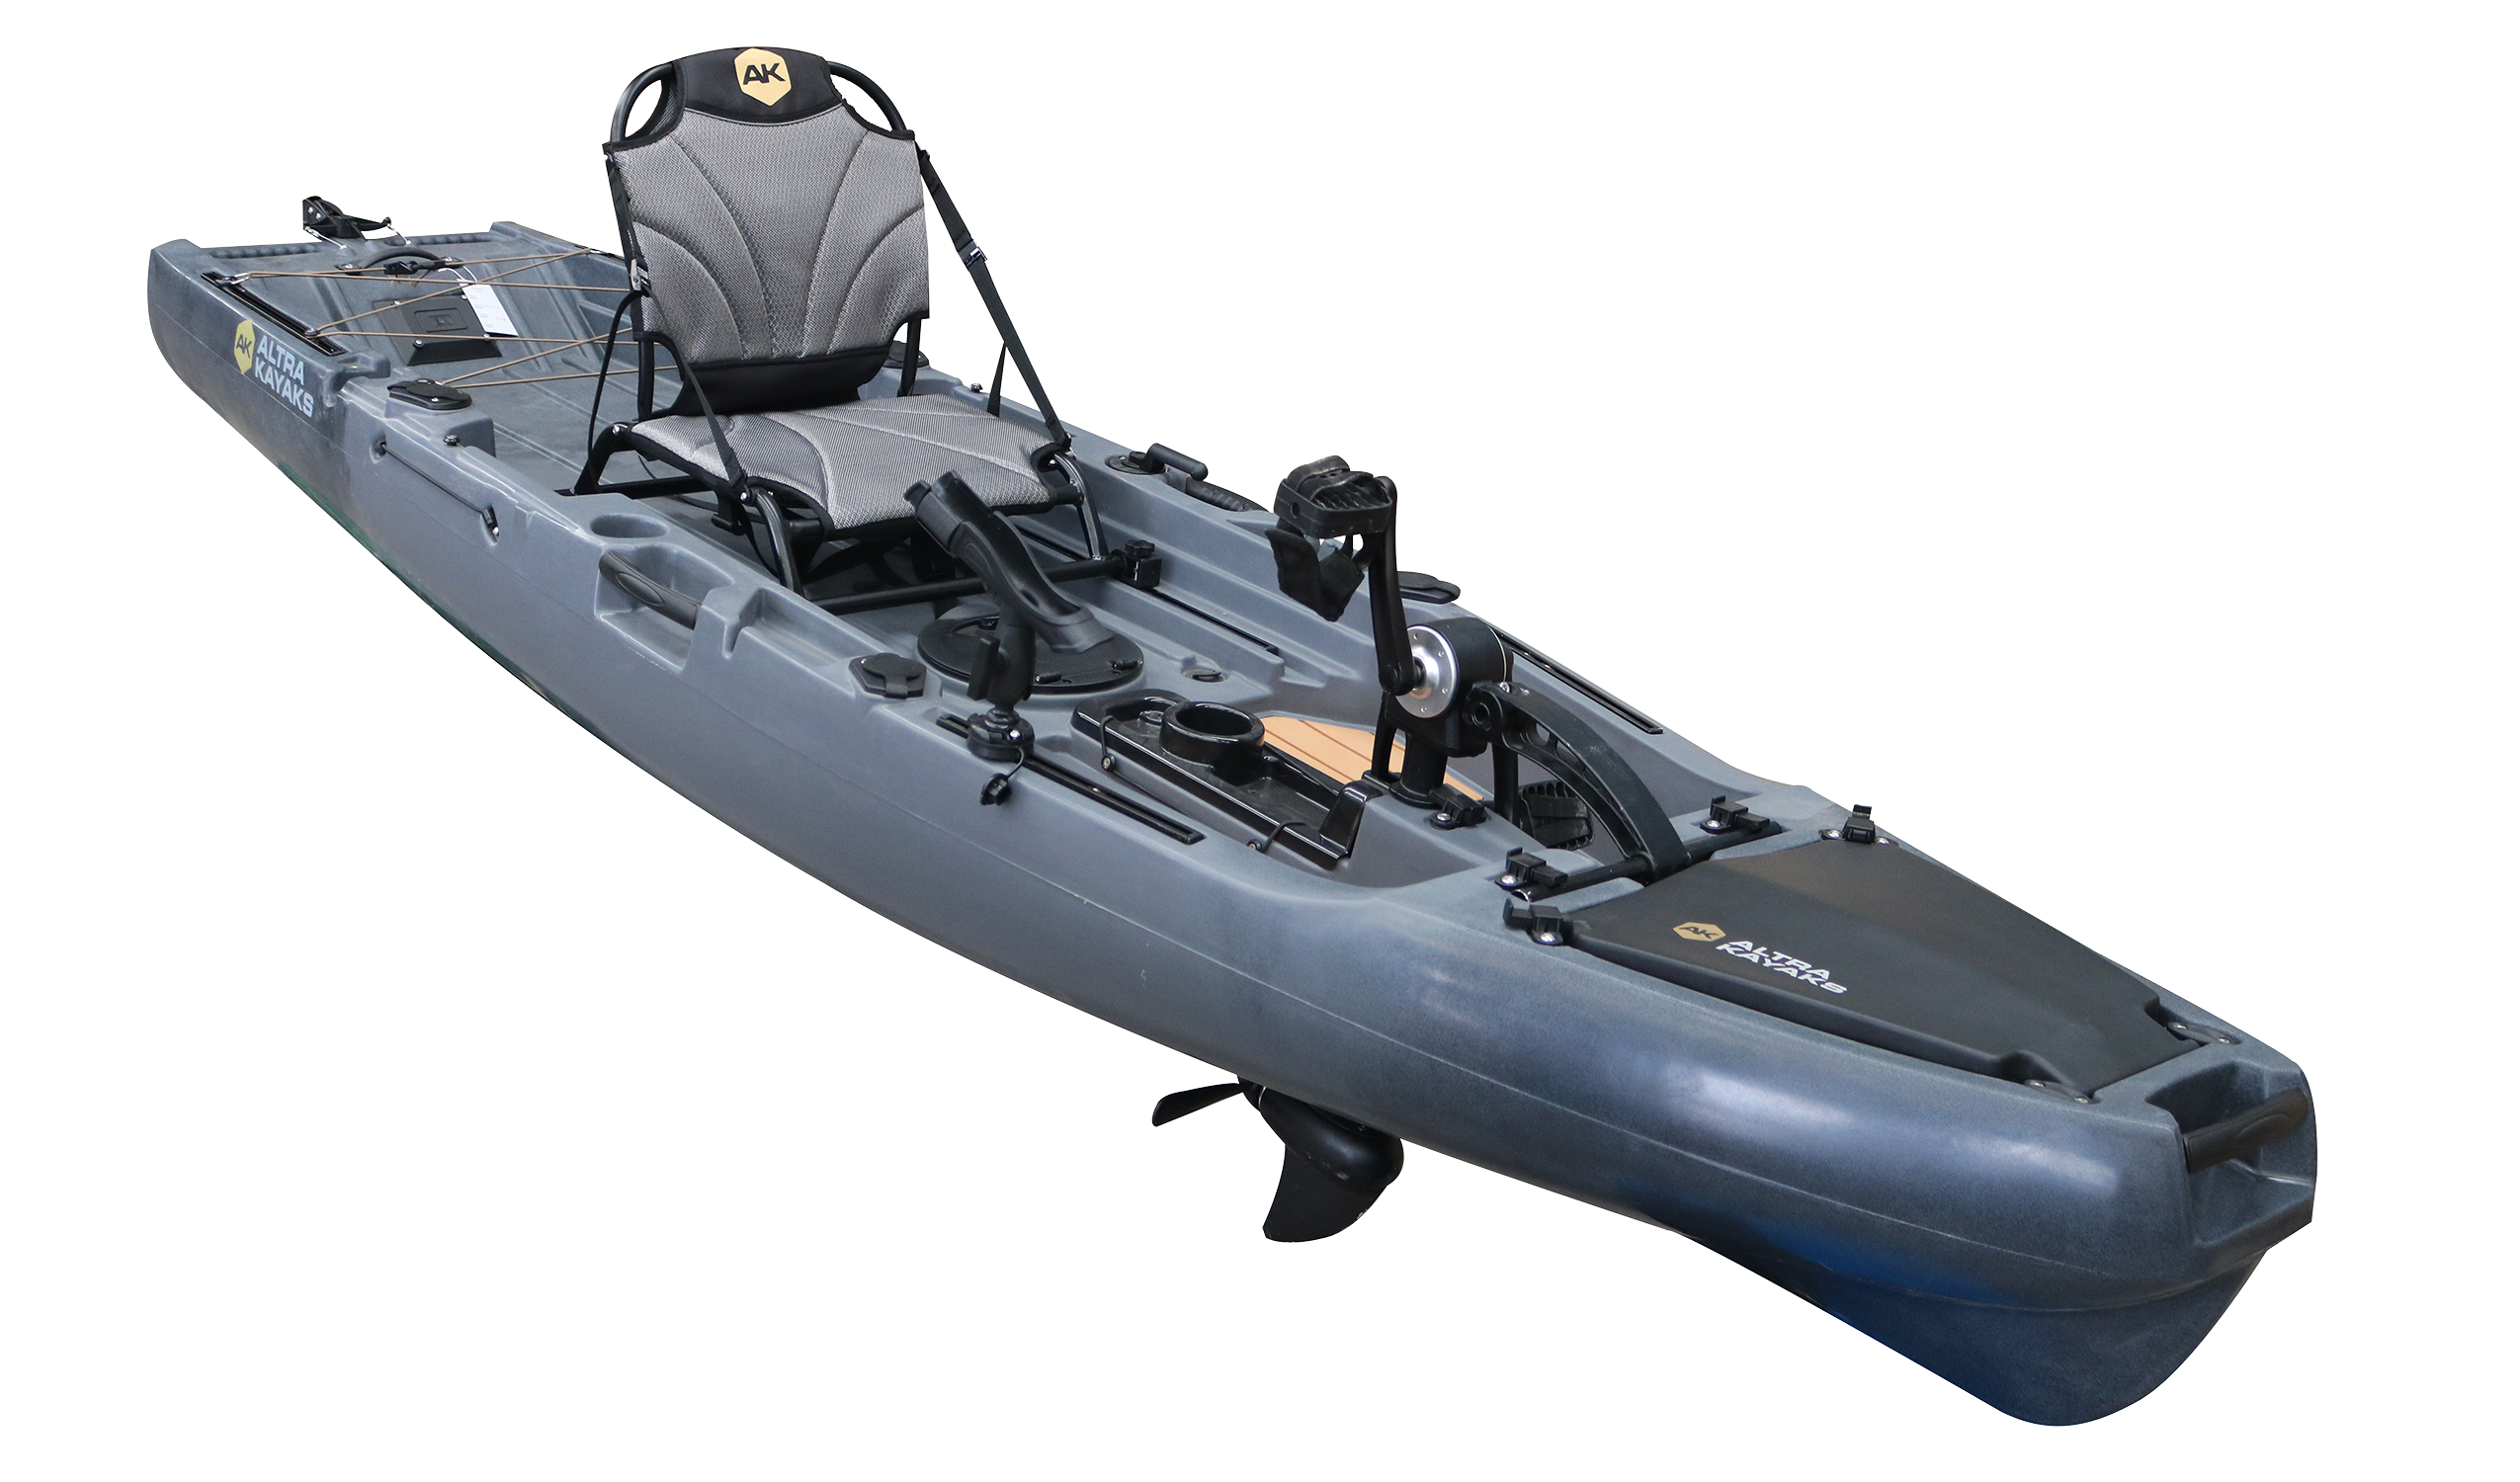 Promozione PD 320-titan: kayak + sedile girevole fino al 10 marzo